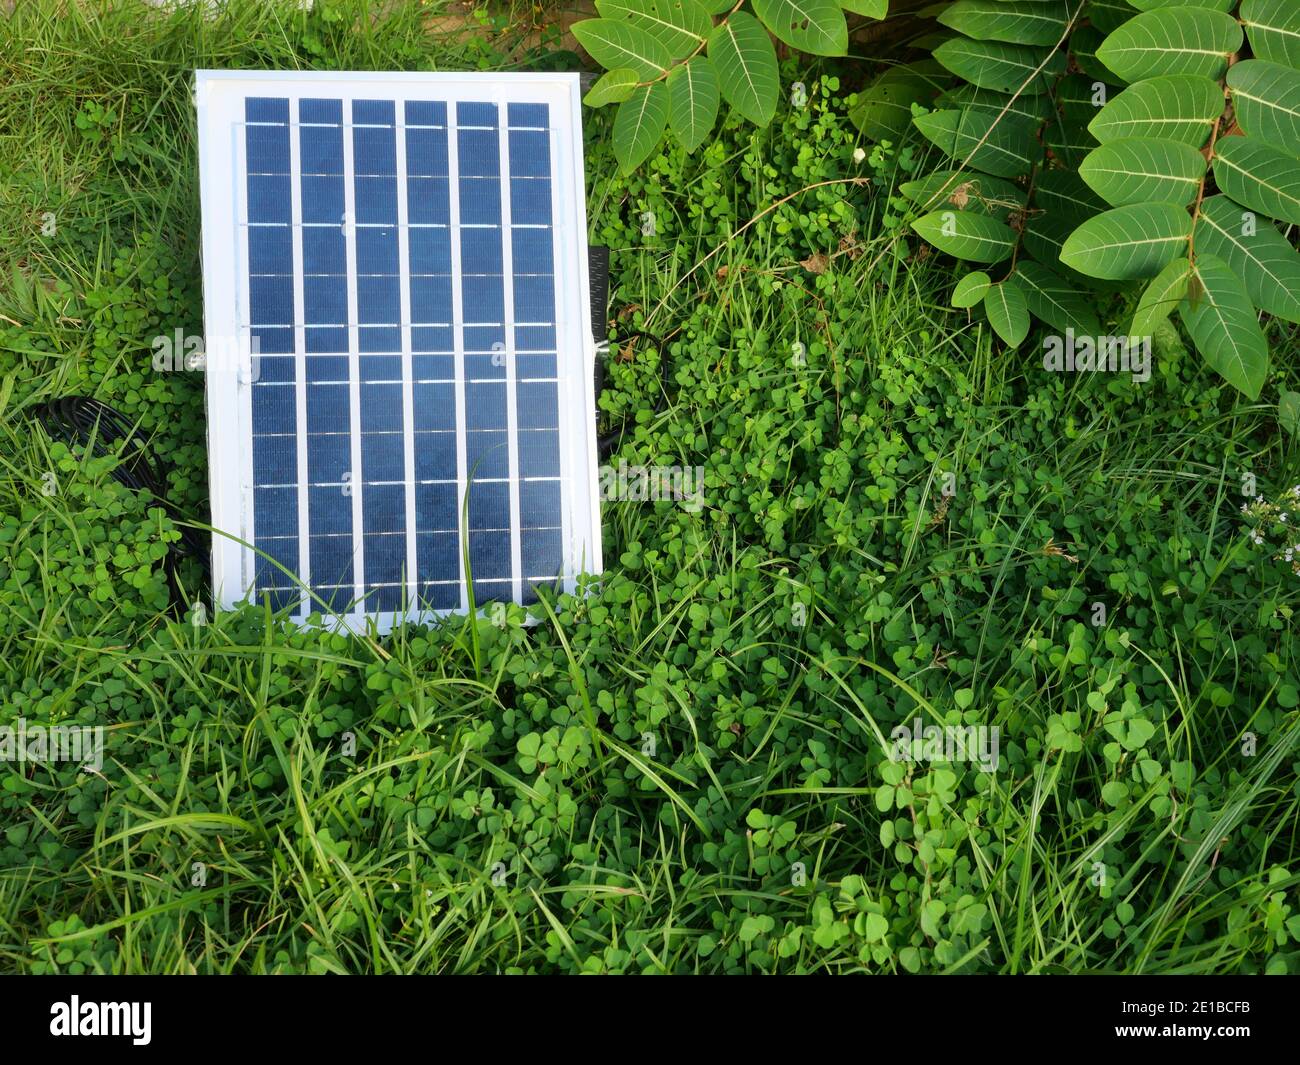 solar power bank 20000mah